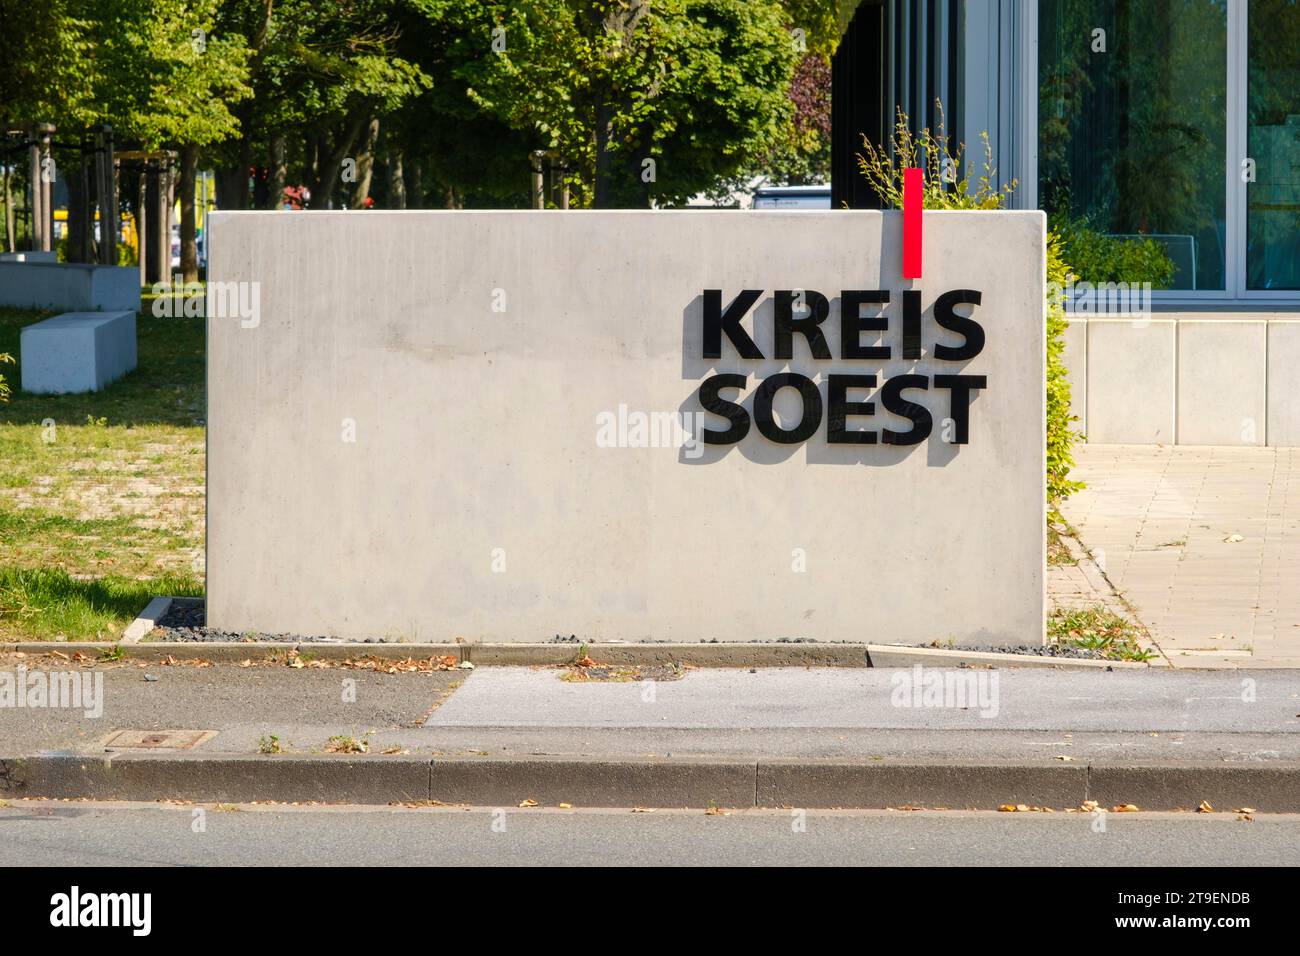 Kreisschild Soest, Soest, Nordrhein-Westfalen, Deutschland Stockfoto